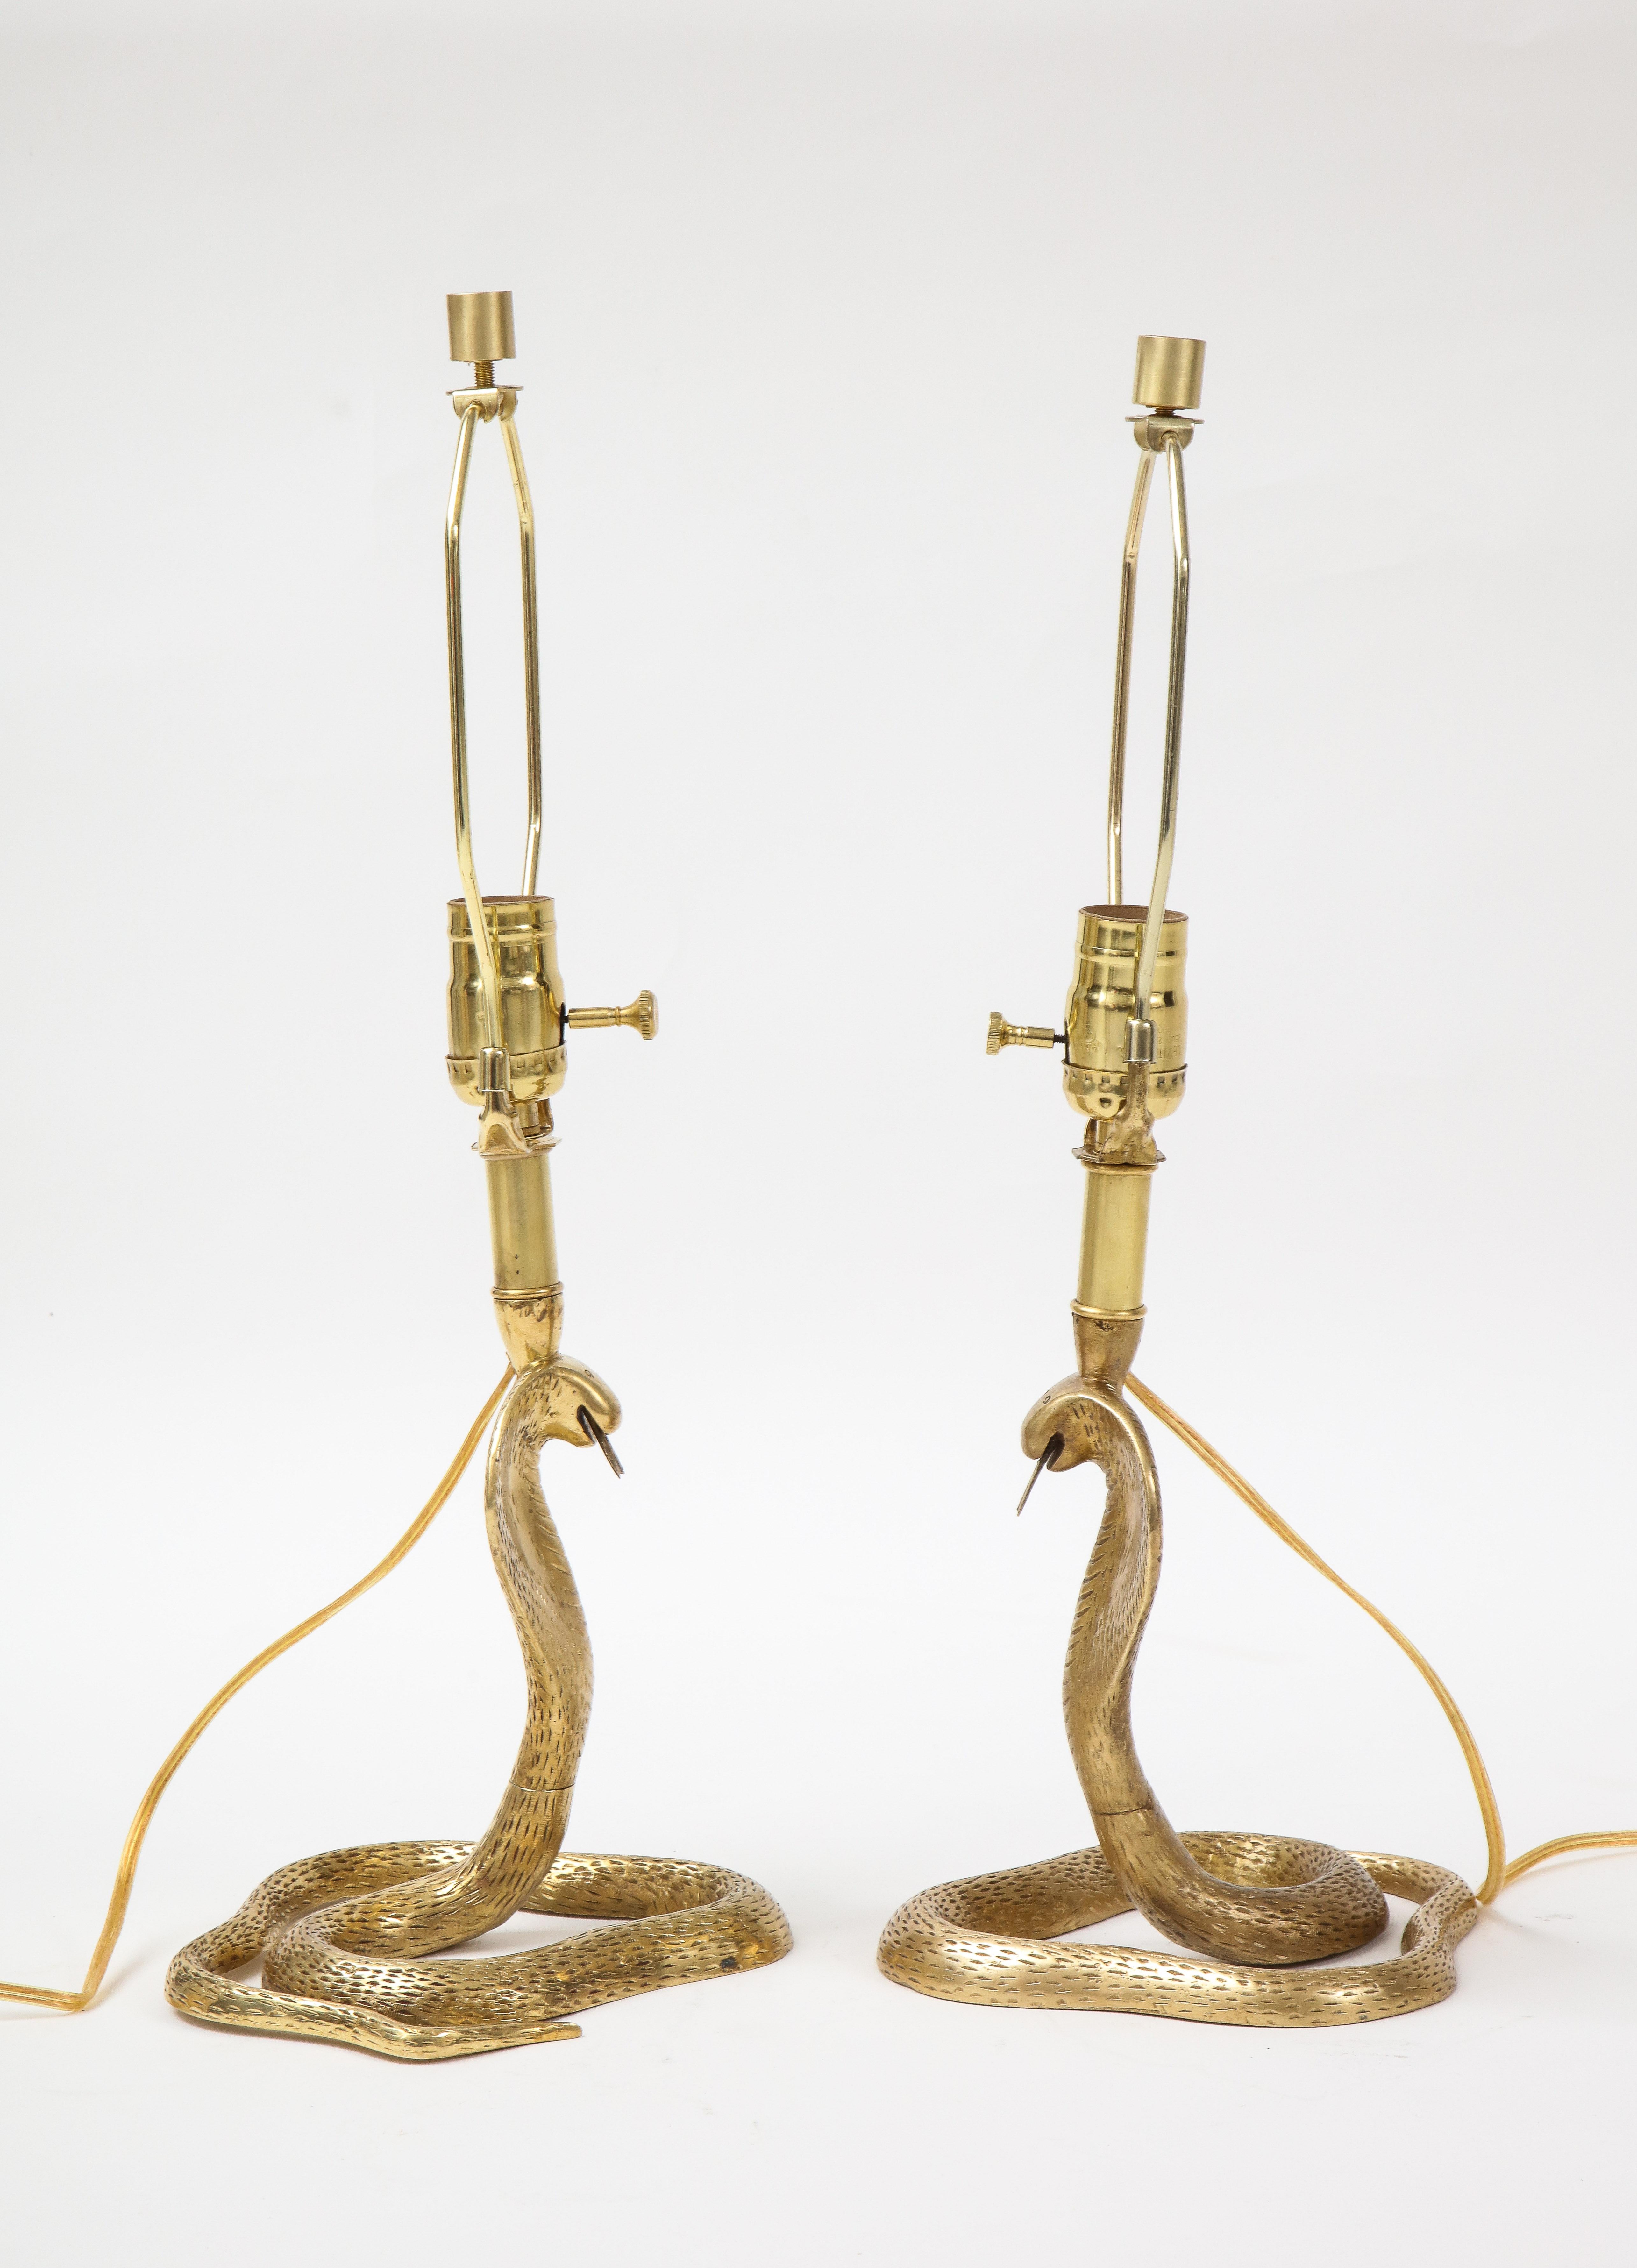 Detailliertes Paar handgefertigter Kobra-Schlangenlampen aus Messingguss im Stil von Maison Jansen. Für die Verwendung in den USA umverdrahtet. 100W max Glühbirne.